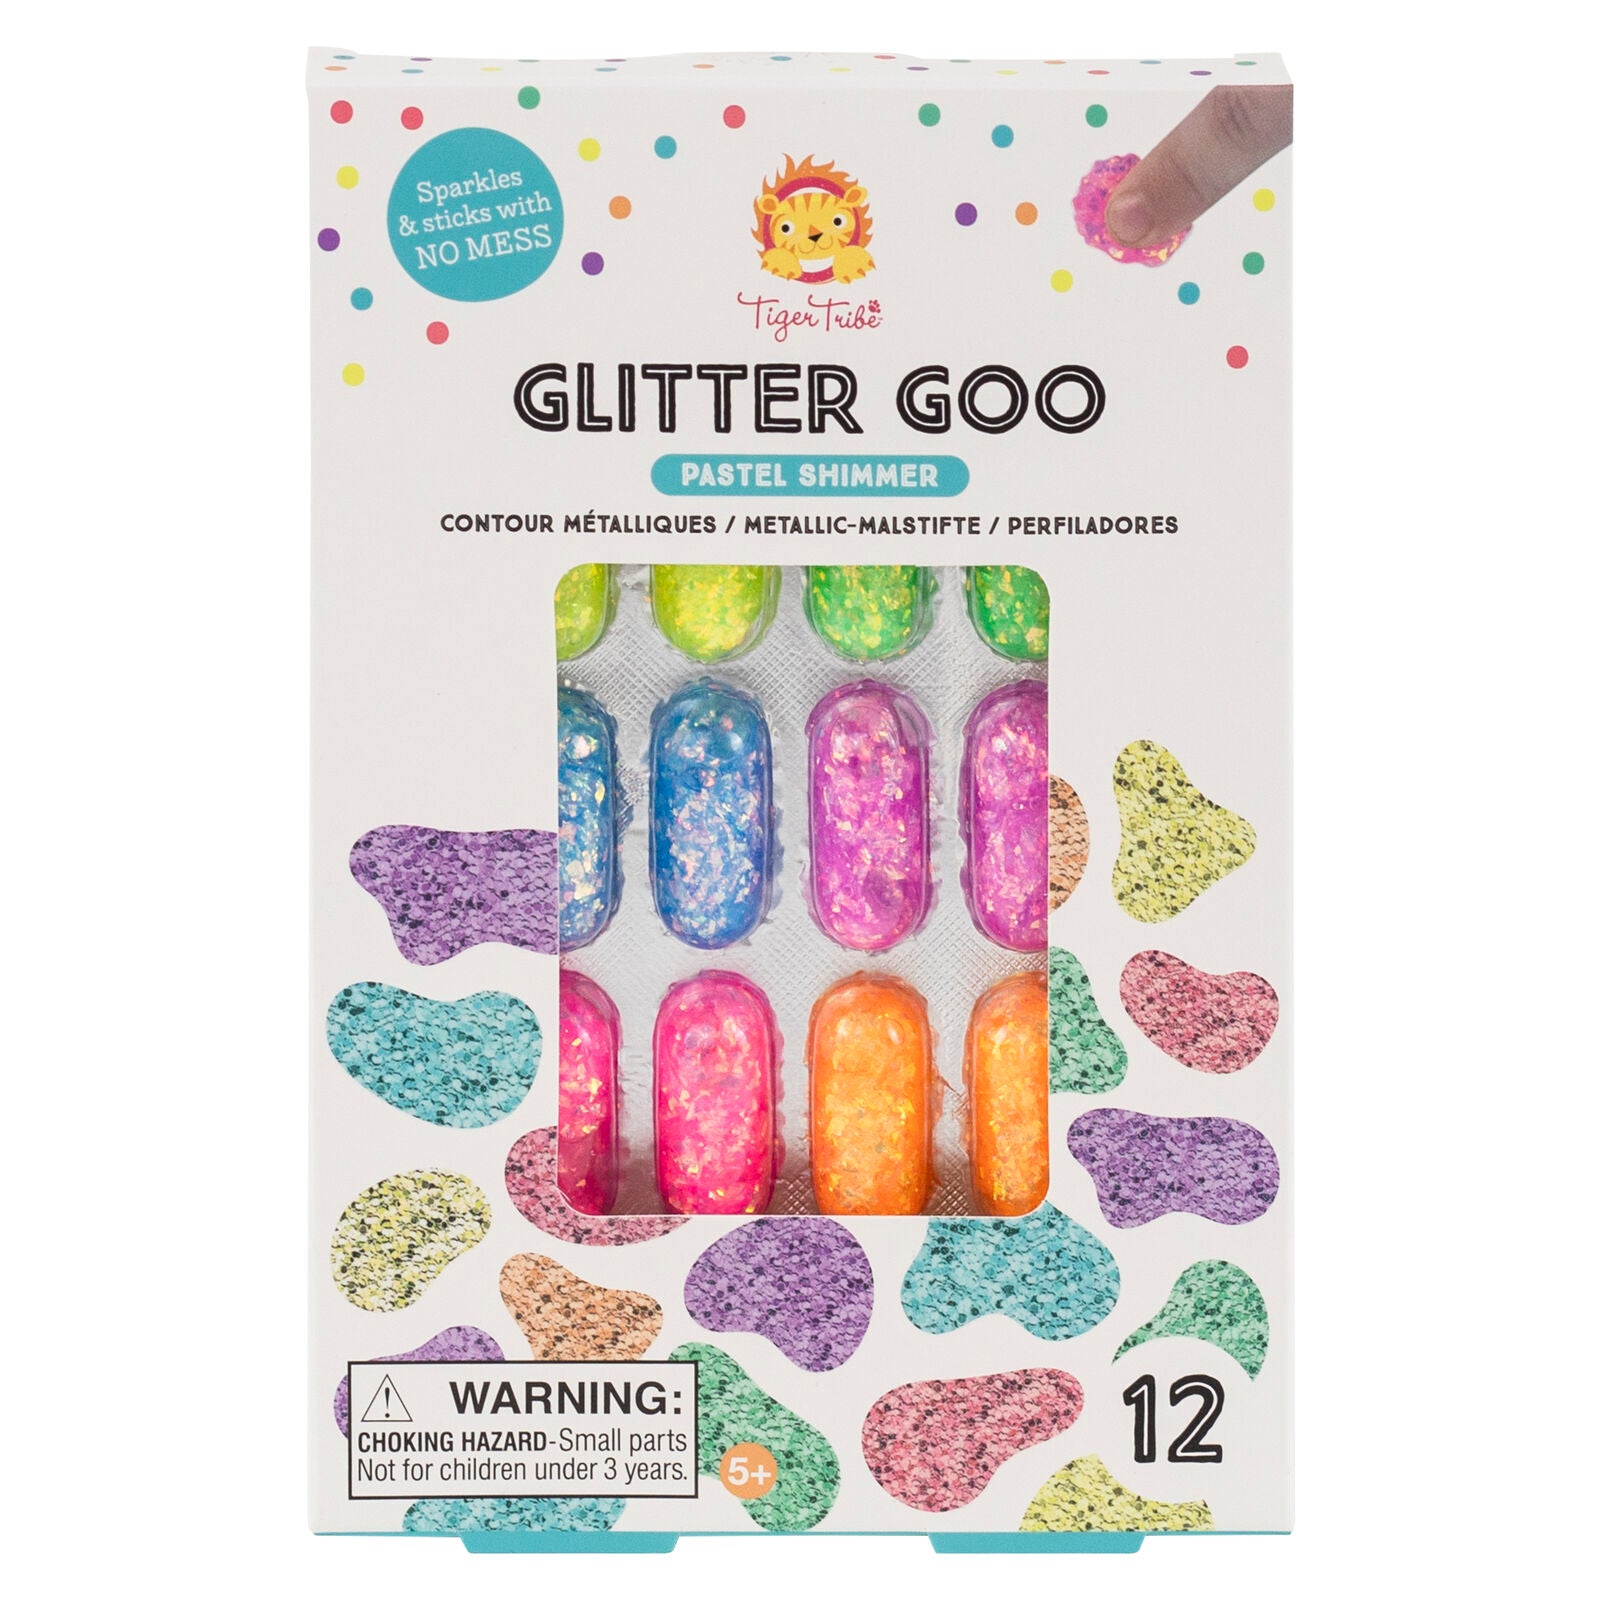 Tiger Tribe Glitter Goo – Pastel Shimmer